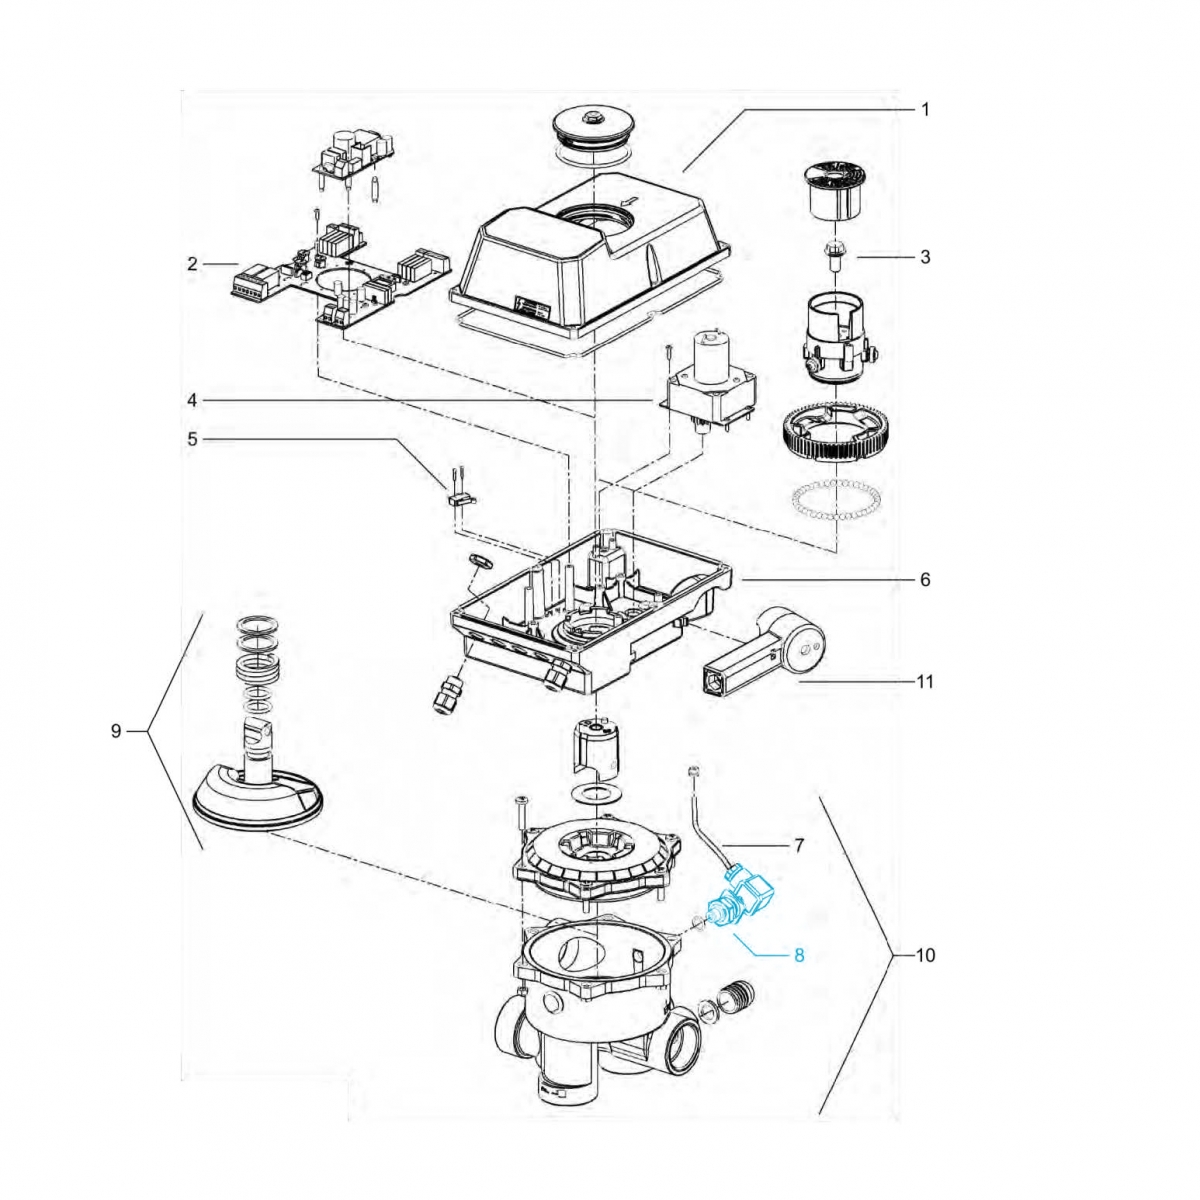 Drucksensor für Loxone Aquastar Air inkl. Kabel Drucksensor für Loxone Aquastar Air inkl. Kabel